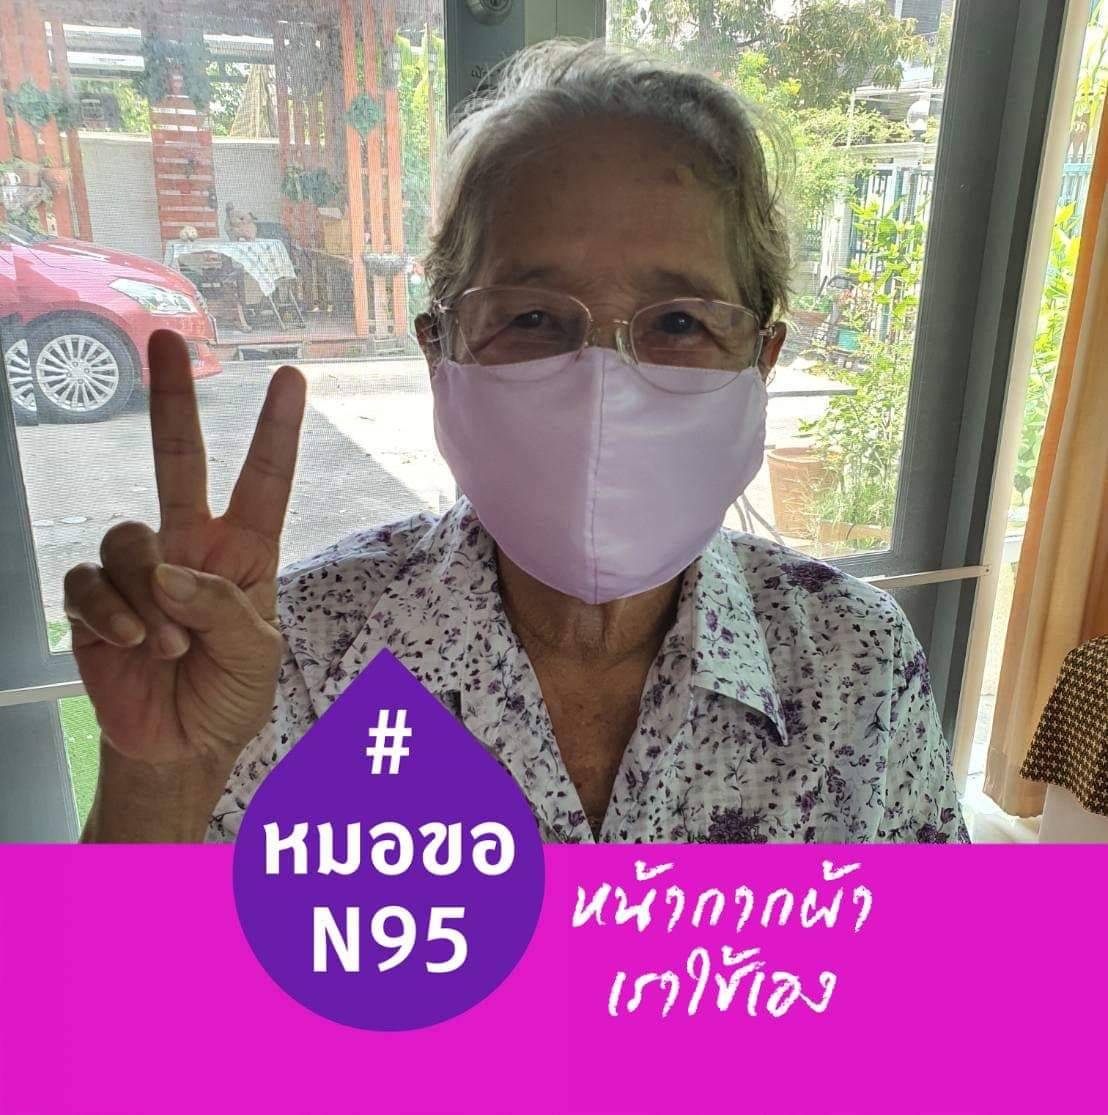 รามาธิบดี เปิดโครงการชวนคนไทยใช้หน้ากากผ้า บริจาคหน้ากาก N95 ให้หมอ พร้อมเชิญชวนคลิกเปลี่ยนรูปโปรไฟล์ กับโครงการ #หมอขอN95หน้ากากผ้าเราใช้เอง